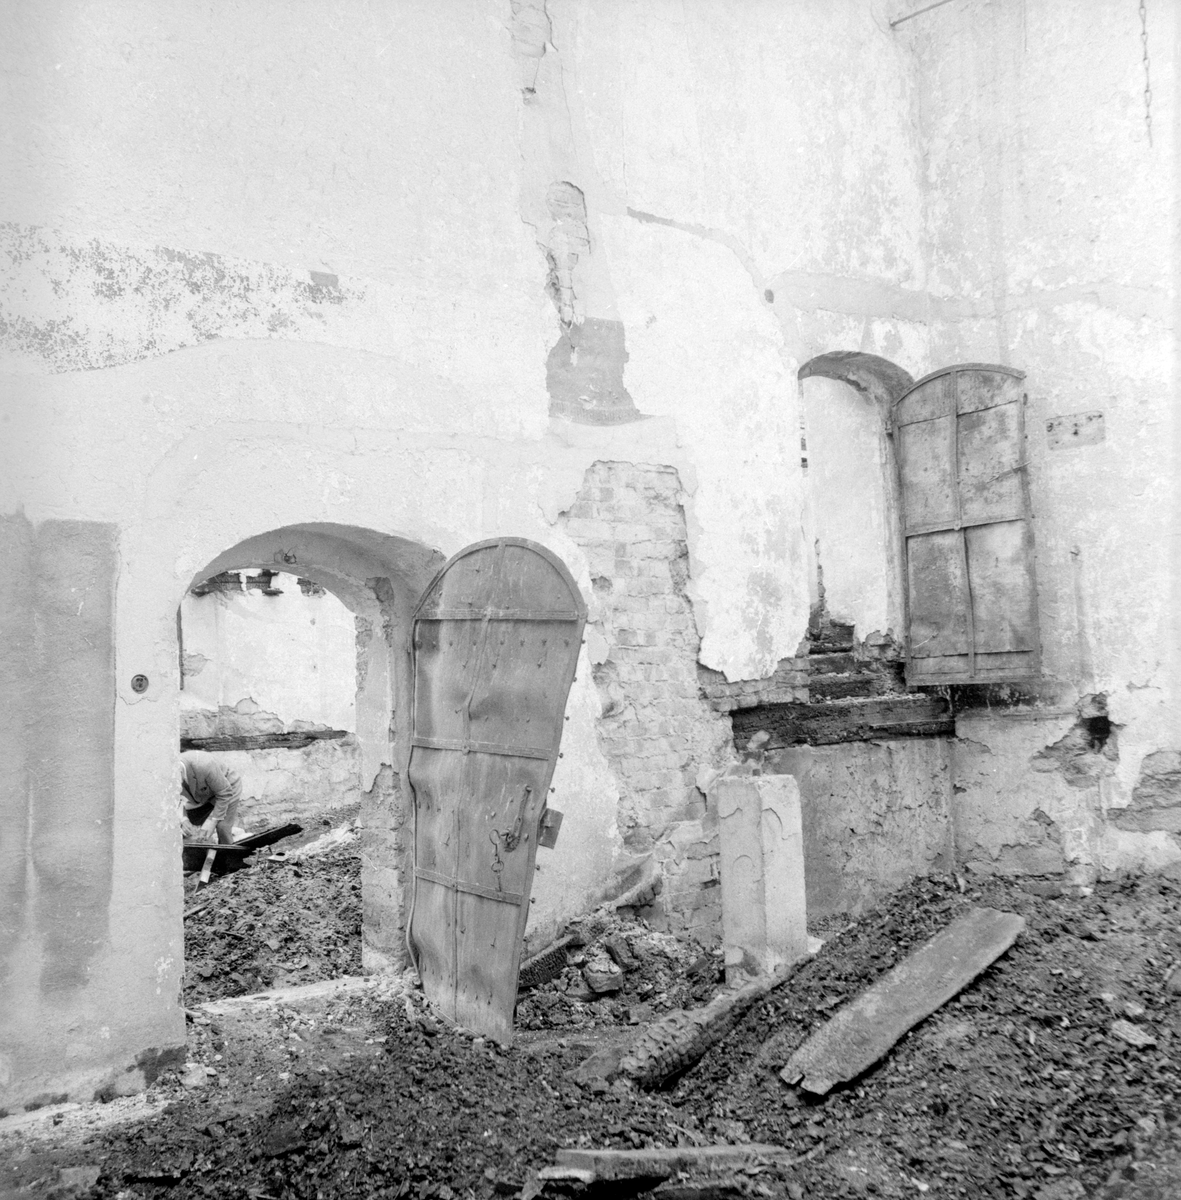 Den 21 juni 1961 utbröt en förödande brand i Vist kyrka. I hård vind spreds sig elden explosionsartat och efter ett par timmar återstod endast de svartbrända murarna. Redan efter några dagar var man i full färd att dokumentera skadorna för att undersöka möjlighet att återuppbygga kyrkan.